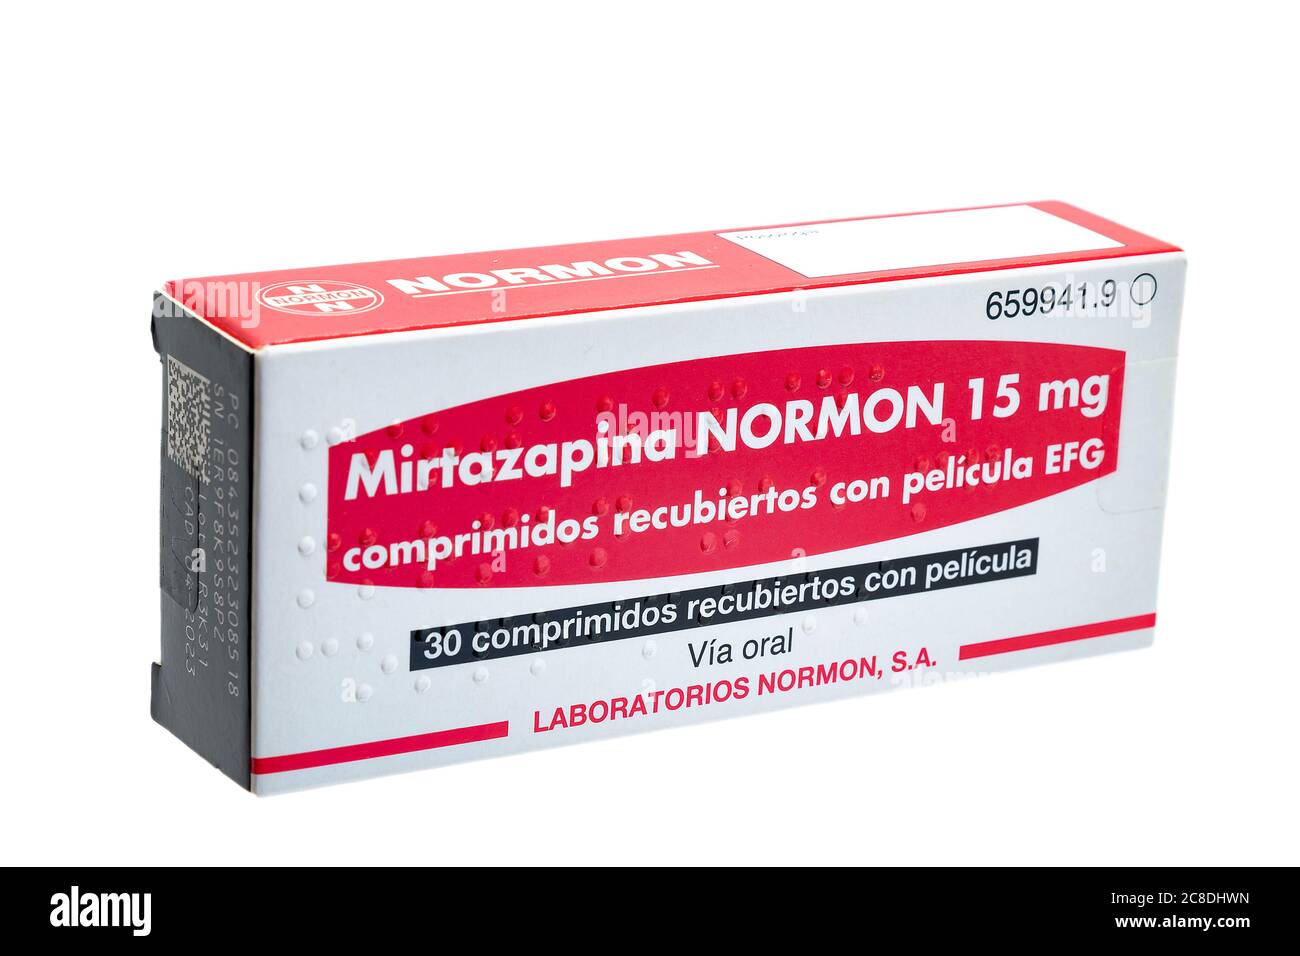 Huelva, Espagne - 23 juillet 2020 : boîte espagnole de mirtazapine Normon. C'est un médicament antidépresseur. Il est utilisé pour traiter la dépression et parfois l'obscurité Banque D'Images